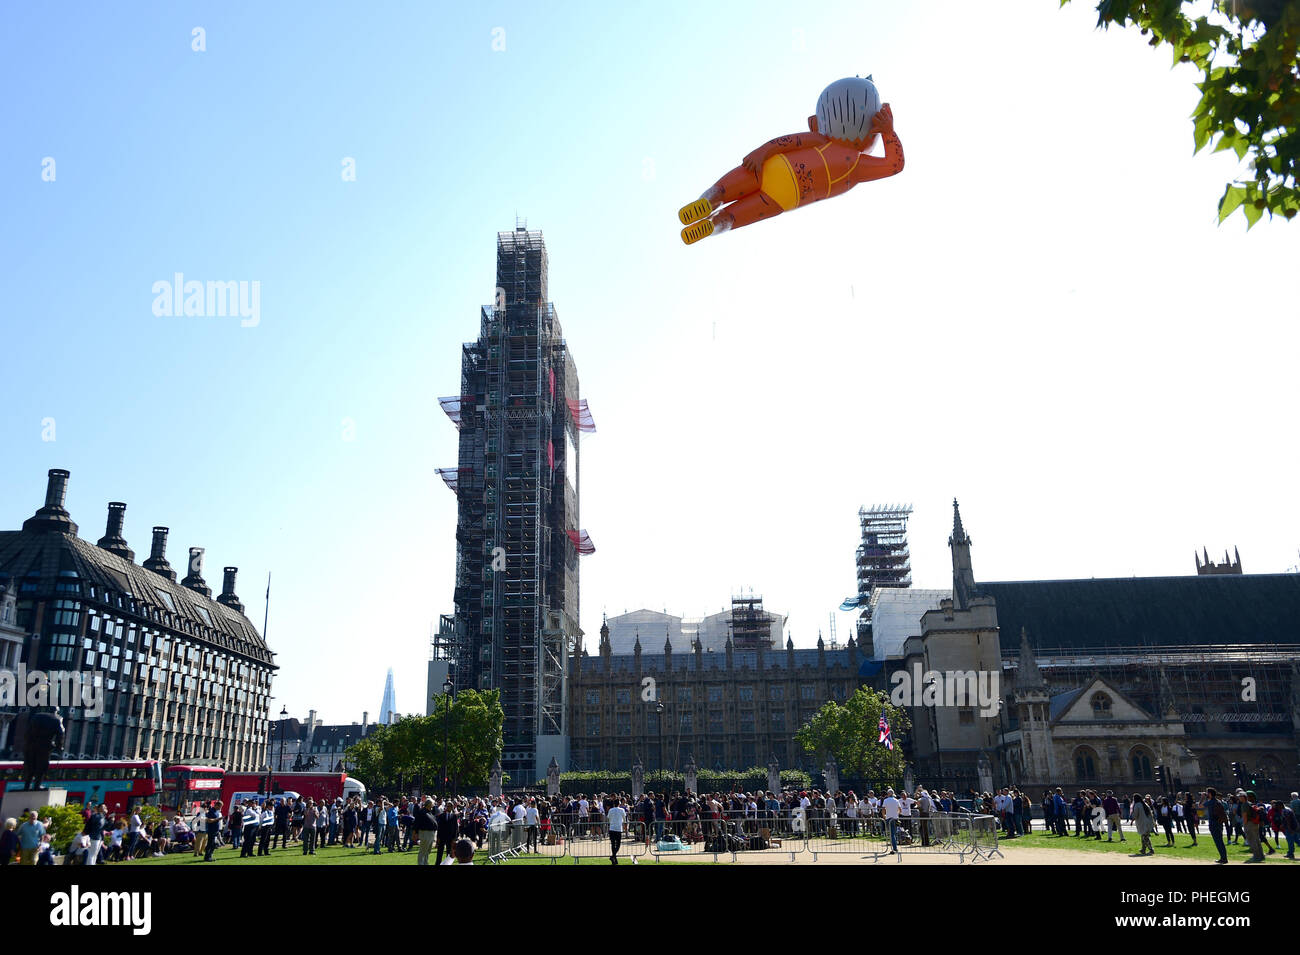 Ein aufgeblasener Blimp der Londoner Bürgermeister Sadiq Khan dargestellt in einem Bikini über Parliament Square, Westminster, London, als Teil einer Kampagne, die Herr Khan von seinem Posten zu entfernen fliegt. Stockfoto